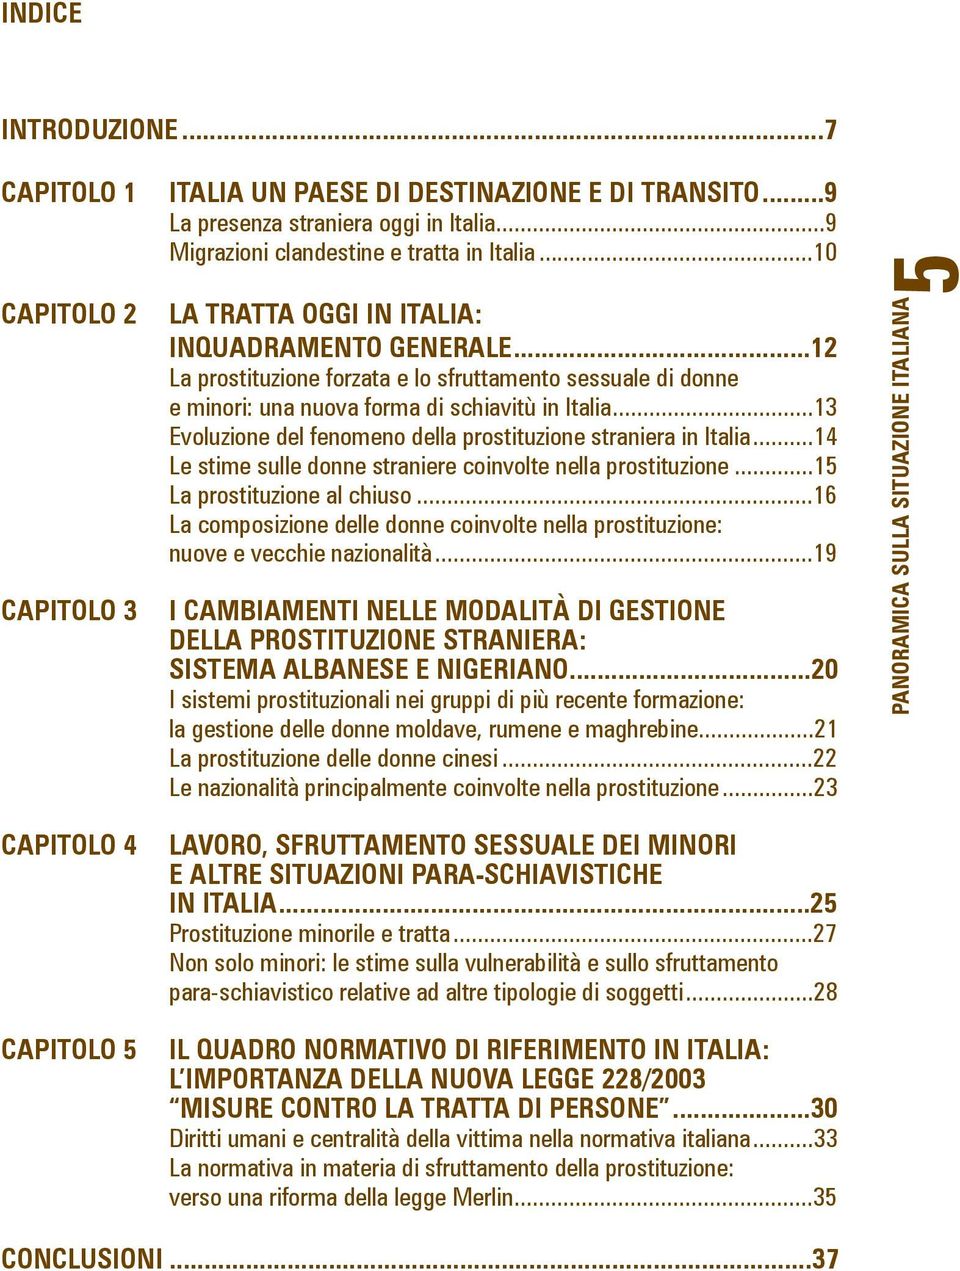 ..13 Evoluzione del fenomeno della prostituzione straniera in Italia...14 Le stime sulle donne straniere coinvolte nella prostituzione...15 La prostituzione al chiuso.